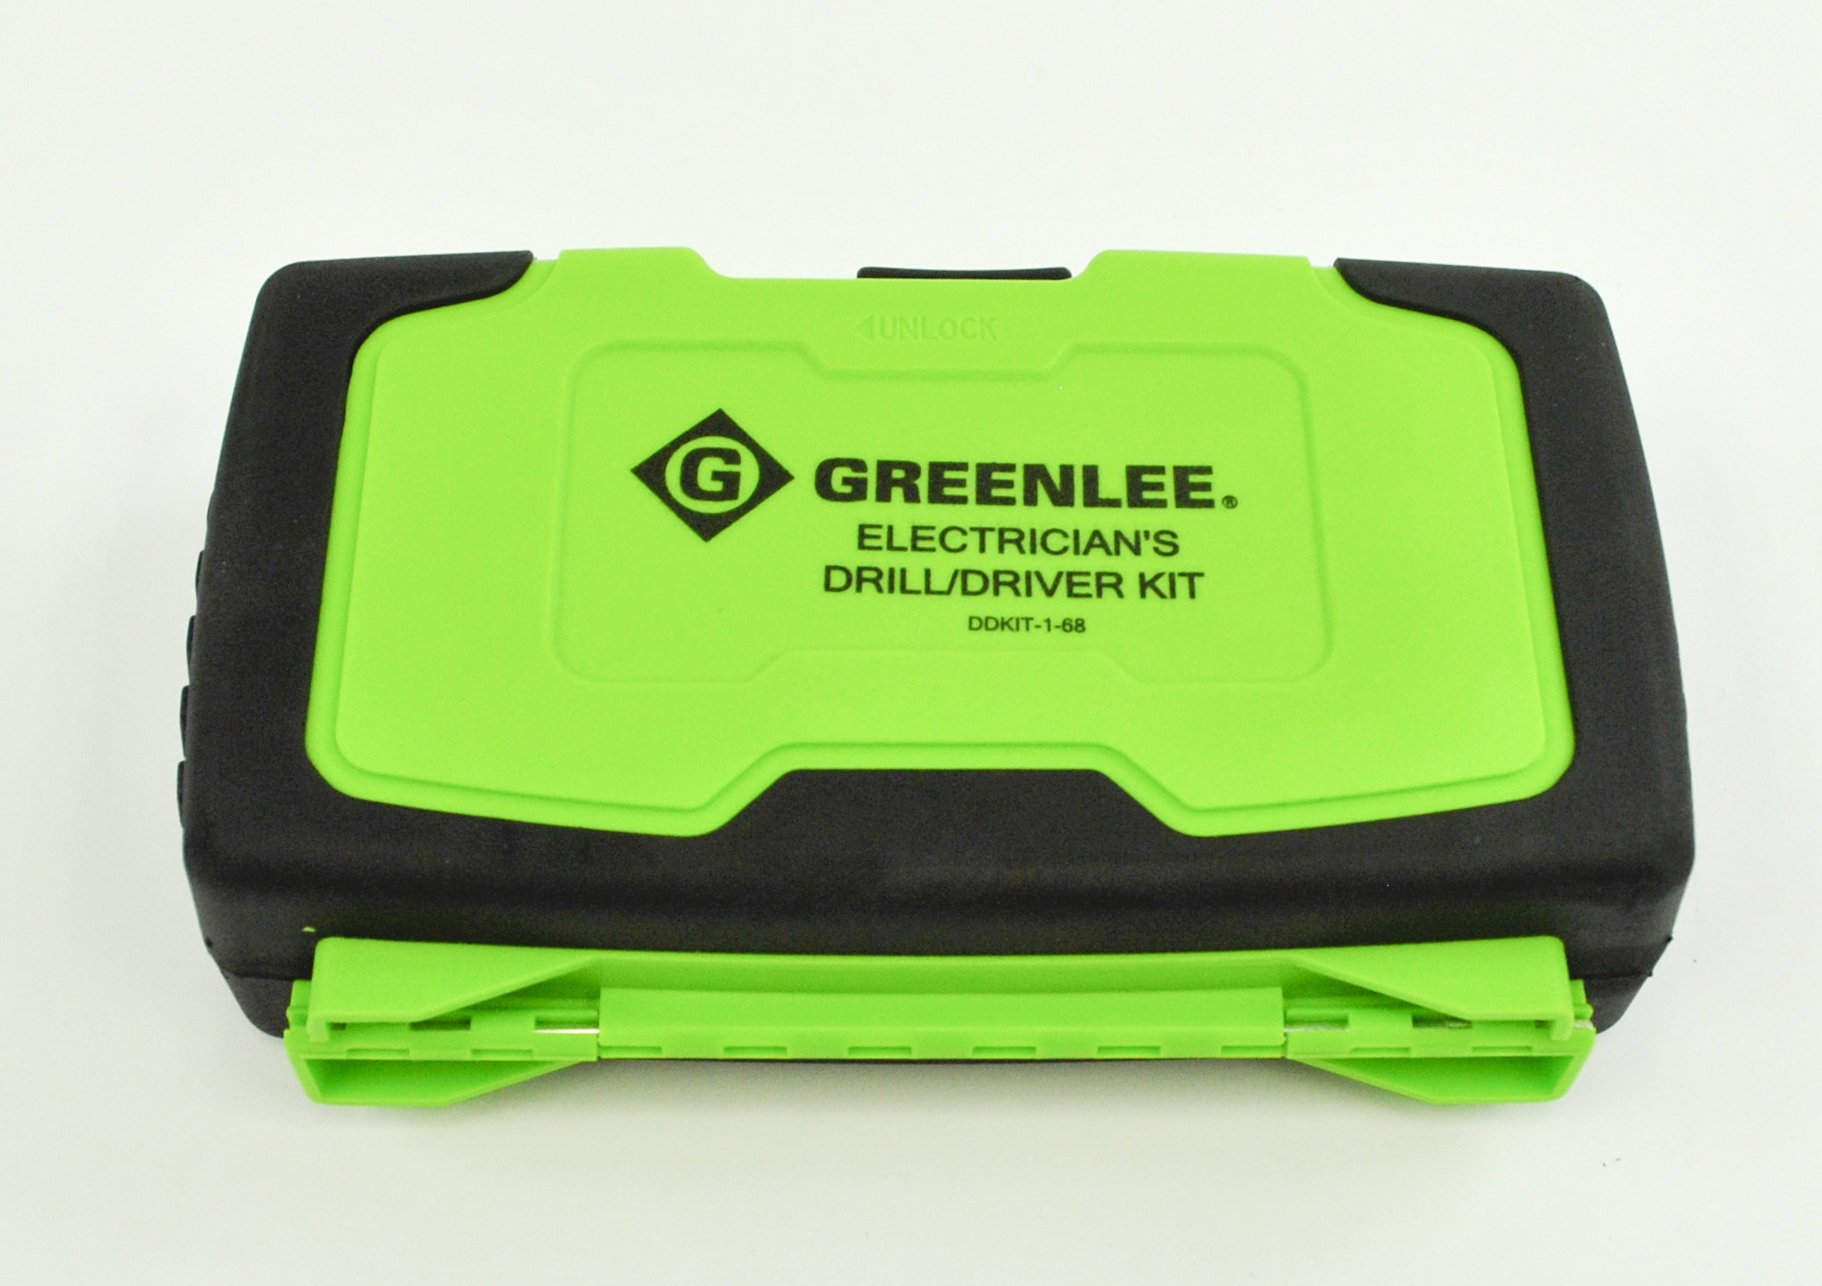 Greenlee DDKIT-1-68 Drill/Driver Set Kit, 12.4 x 10.6 x 2.4